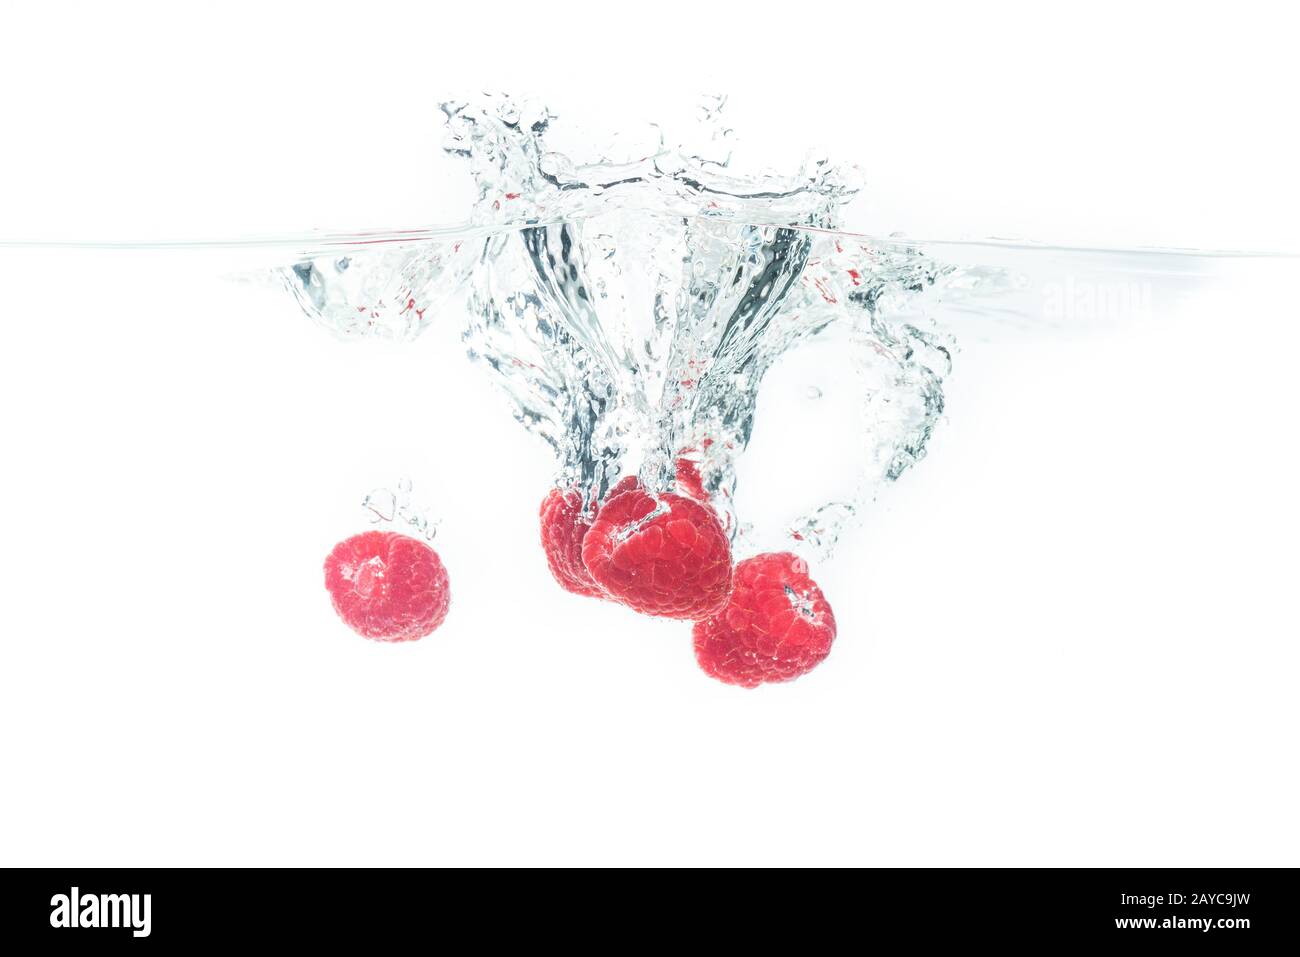 Mazzo di lamponi che spruzzano sulla superficie dell'acqua e che affondano. Isolato su sfondo bianco, splash food fotografia. Foto Stock